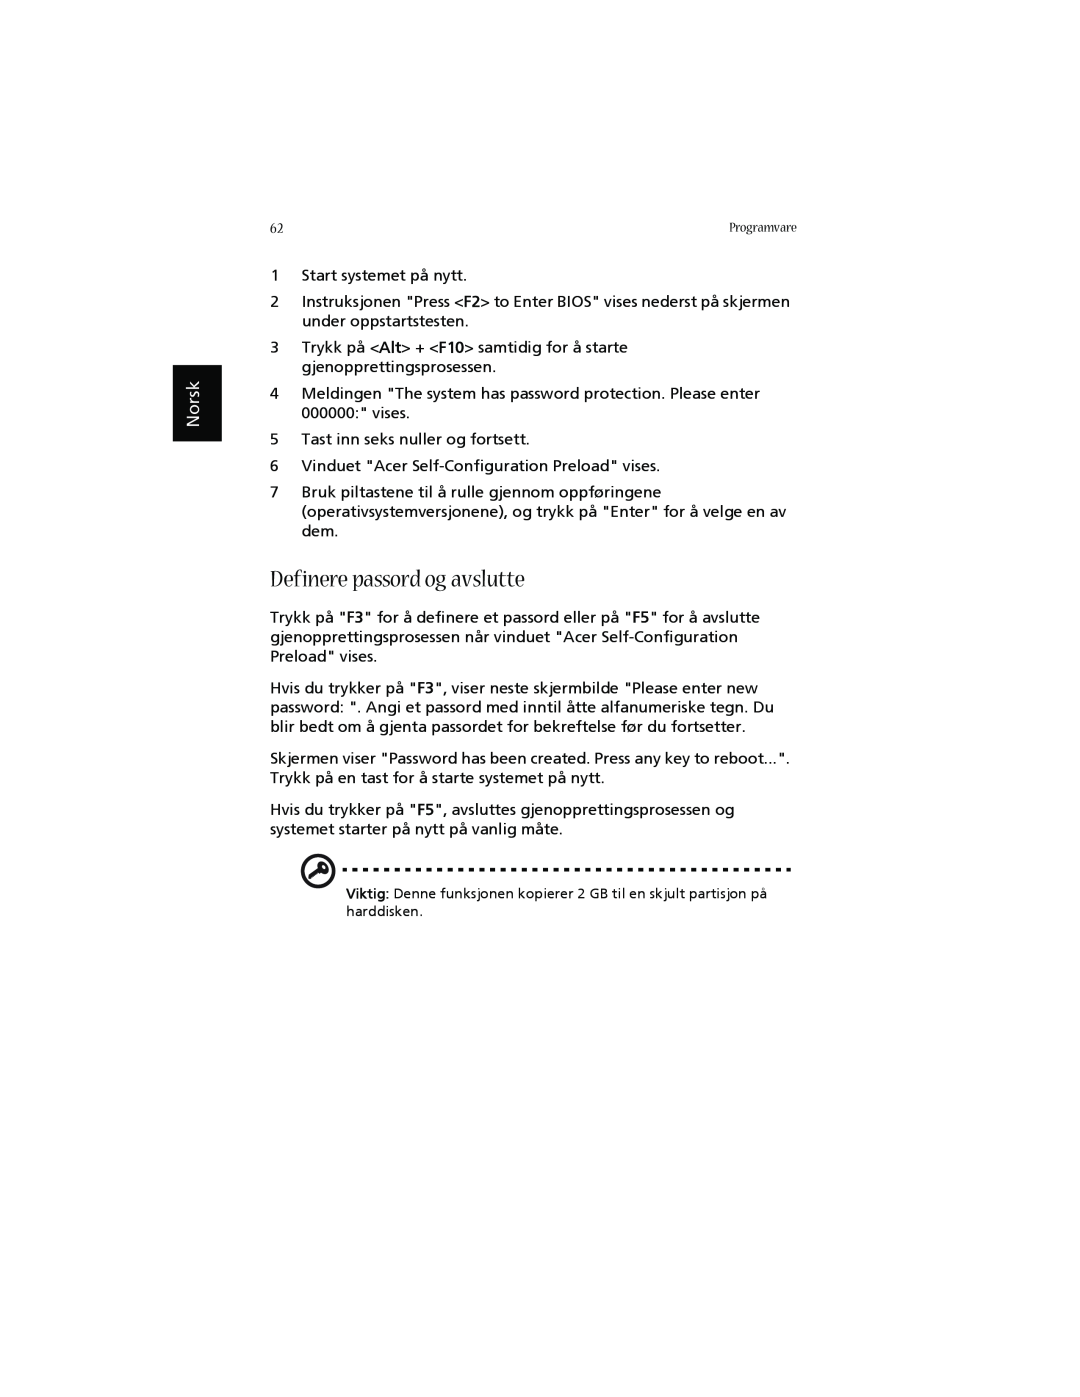 Acer 1660 manual Definere passord og avslutte, Norsk 